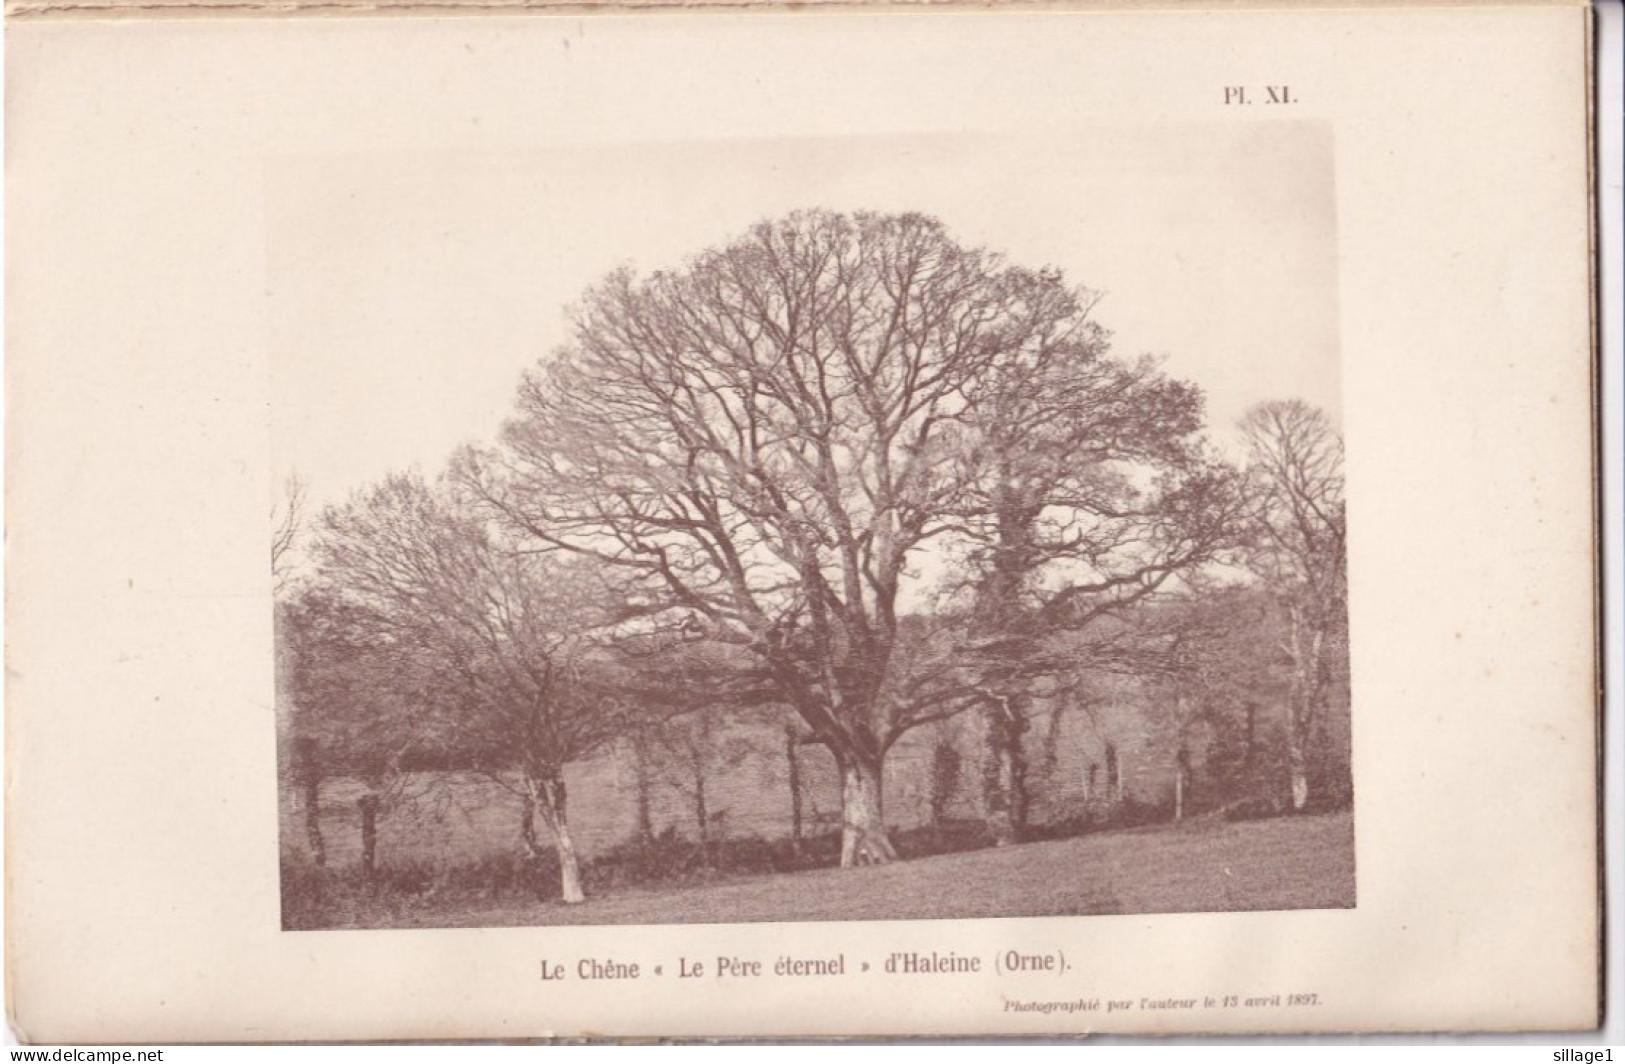 Haleine (Orne 61) Le Chêne " Le Père éternel " D'Haleine  (Orne) - Photographié Le 13 Avril 1897 - Andere Pläne